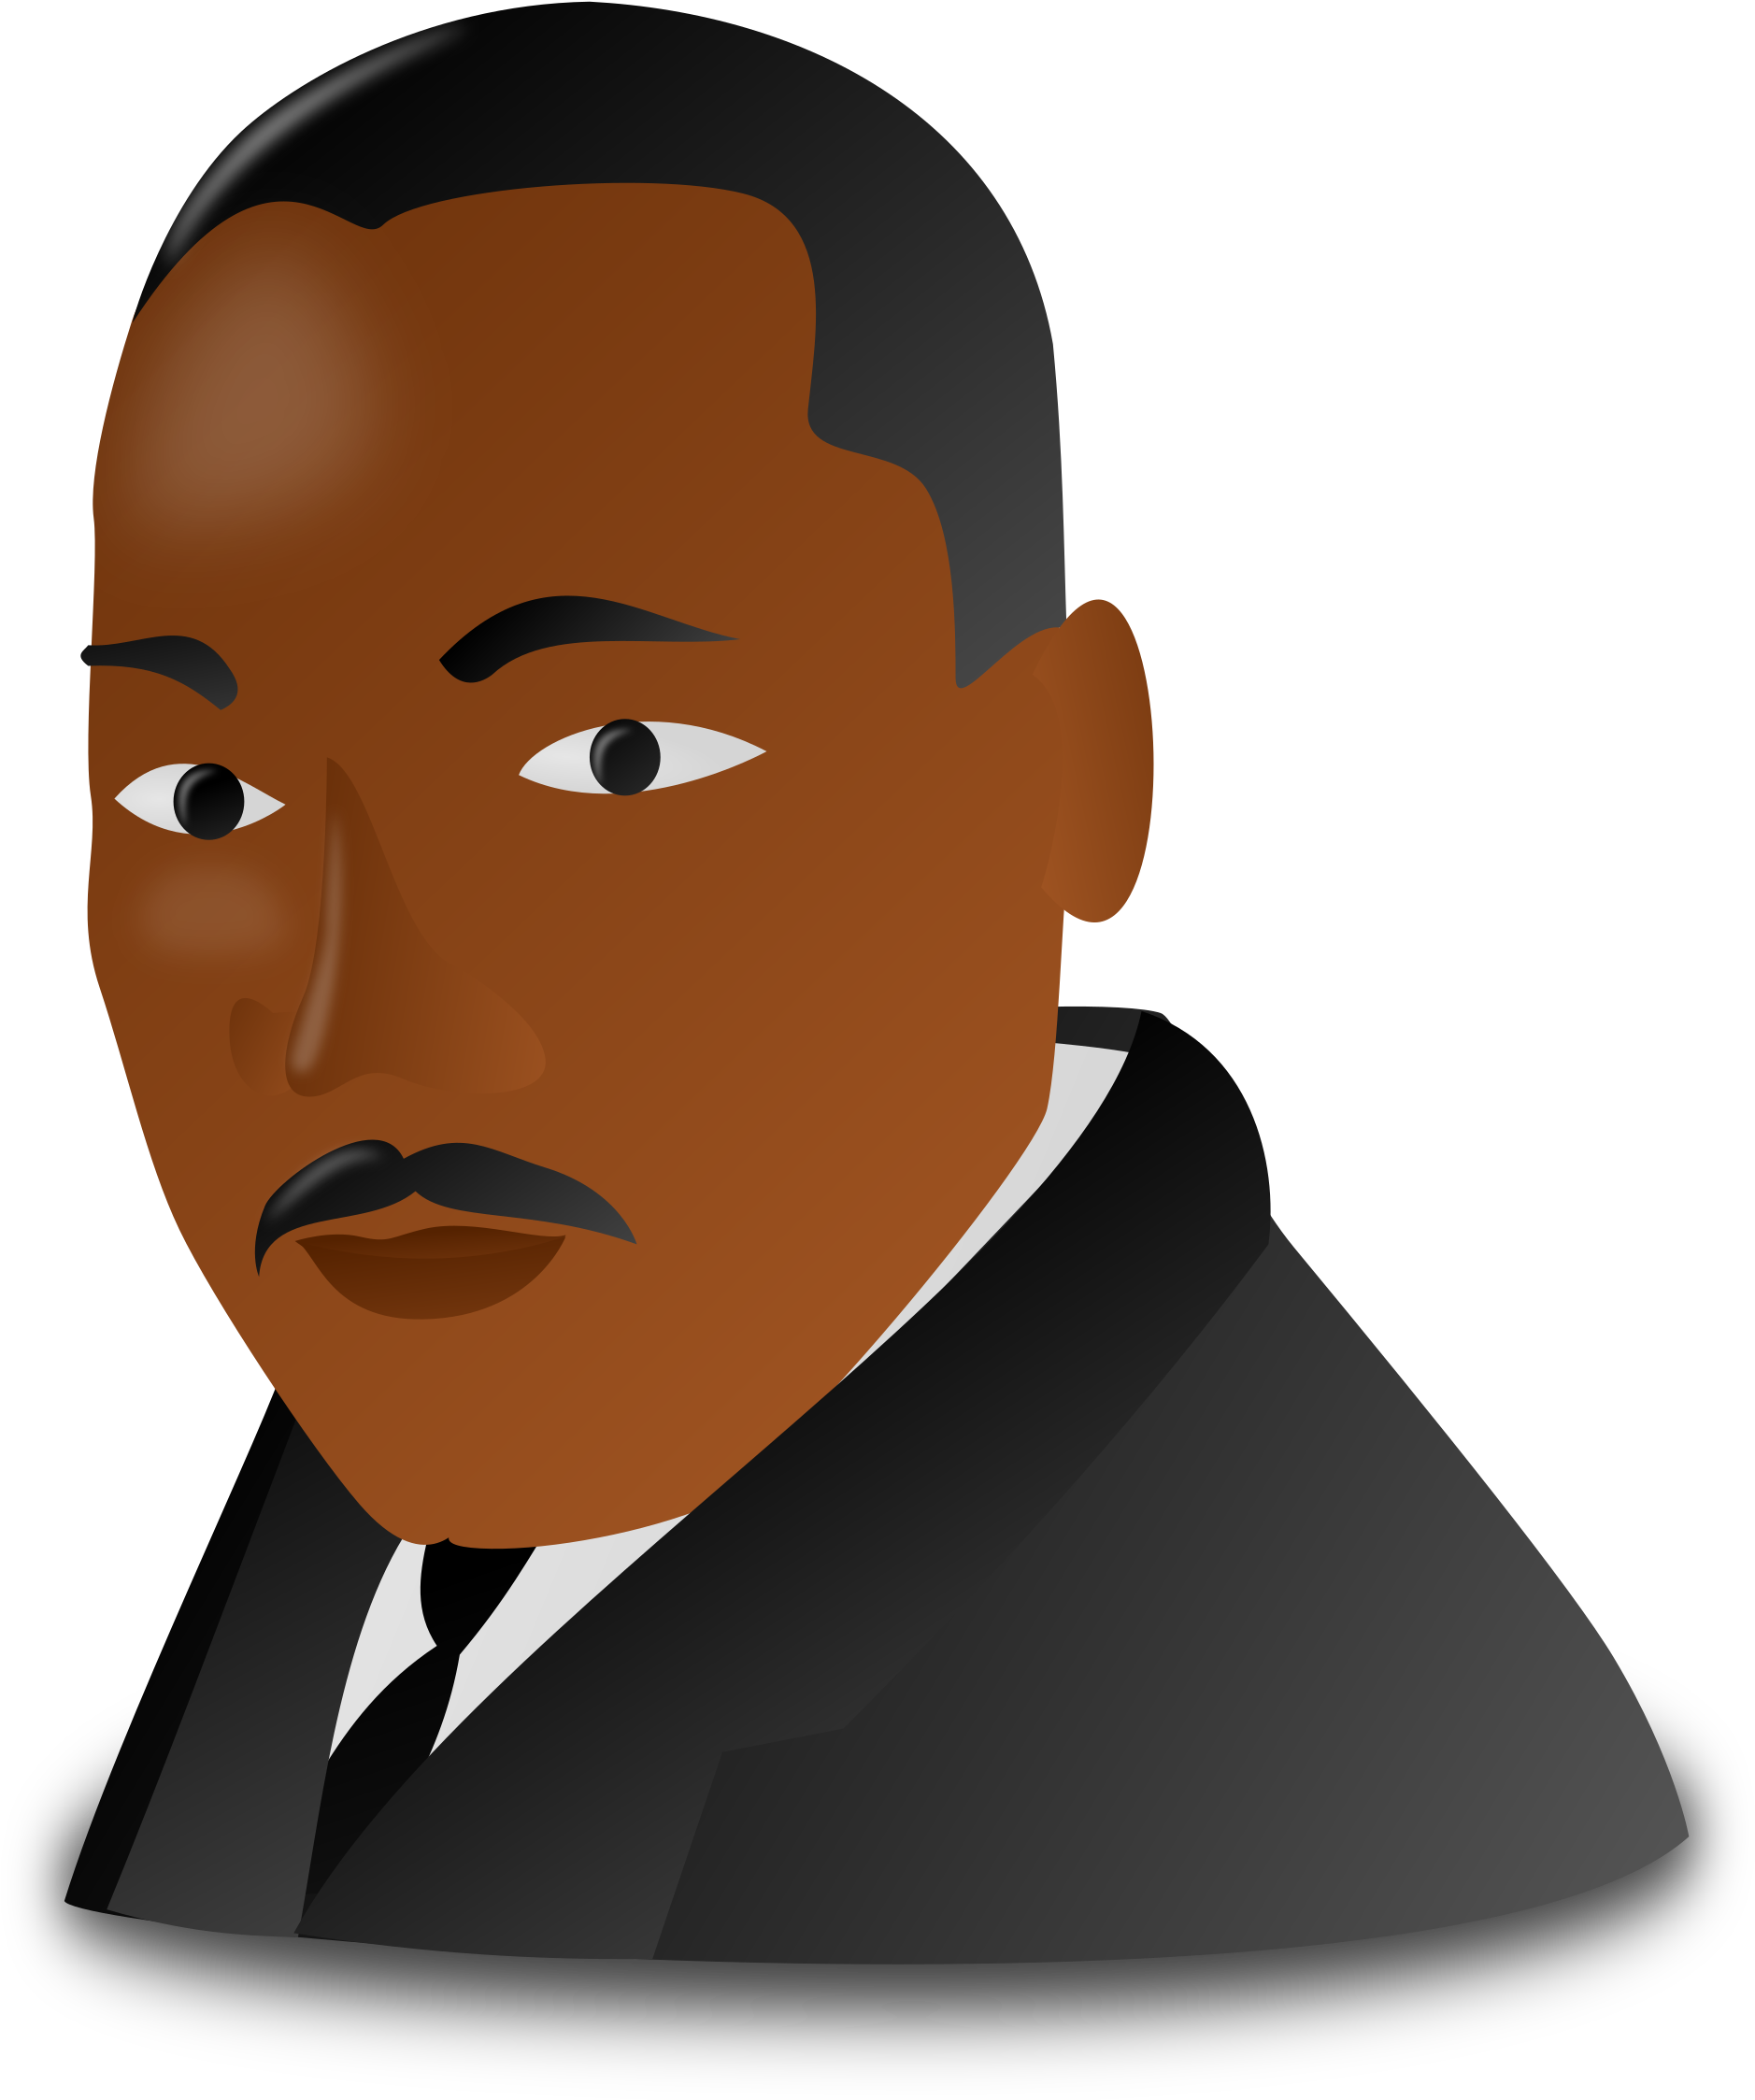 Martin Luther King Jr Clipart Transparent Background - emsekflol.com